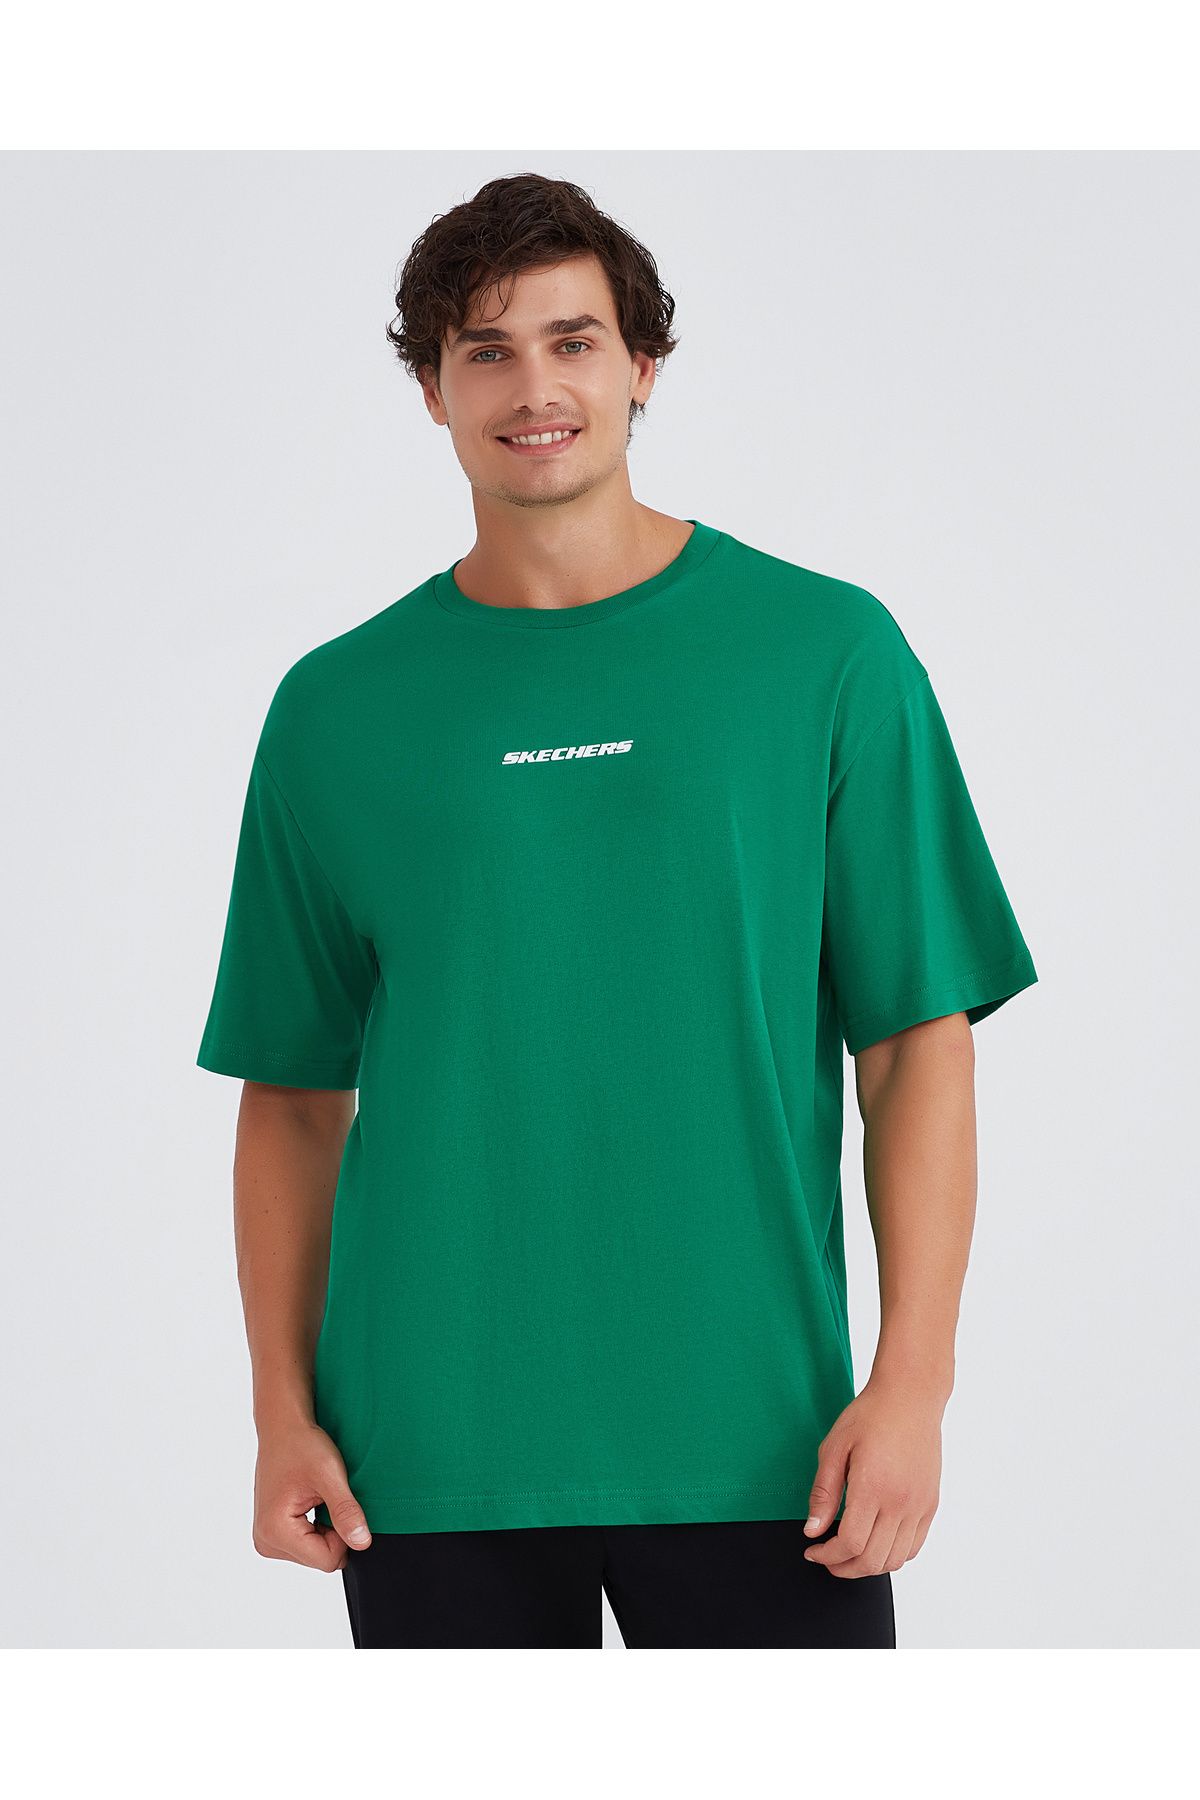 Skechers M Graphic Tee Oversize T-Shirt Erkek Haki Tshirt S232404-300